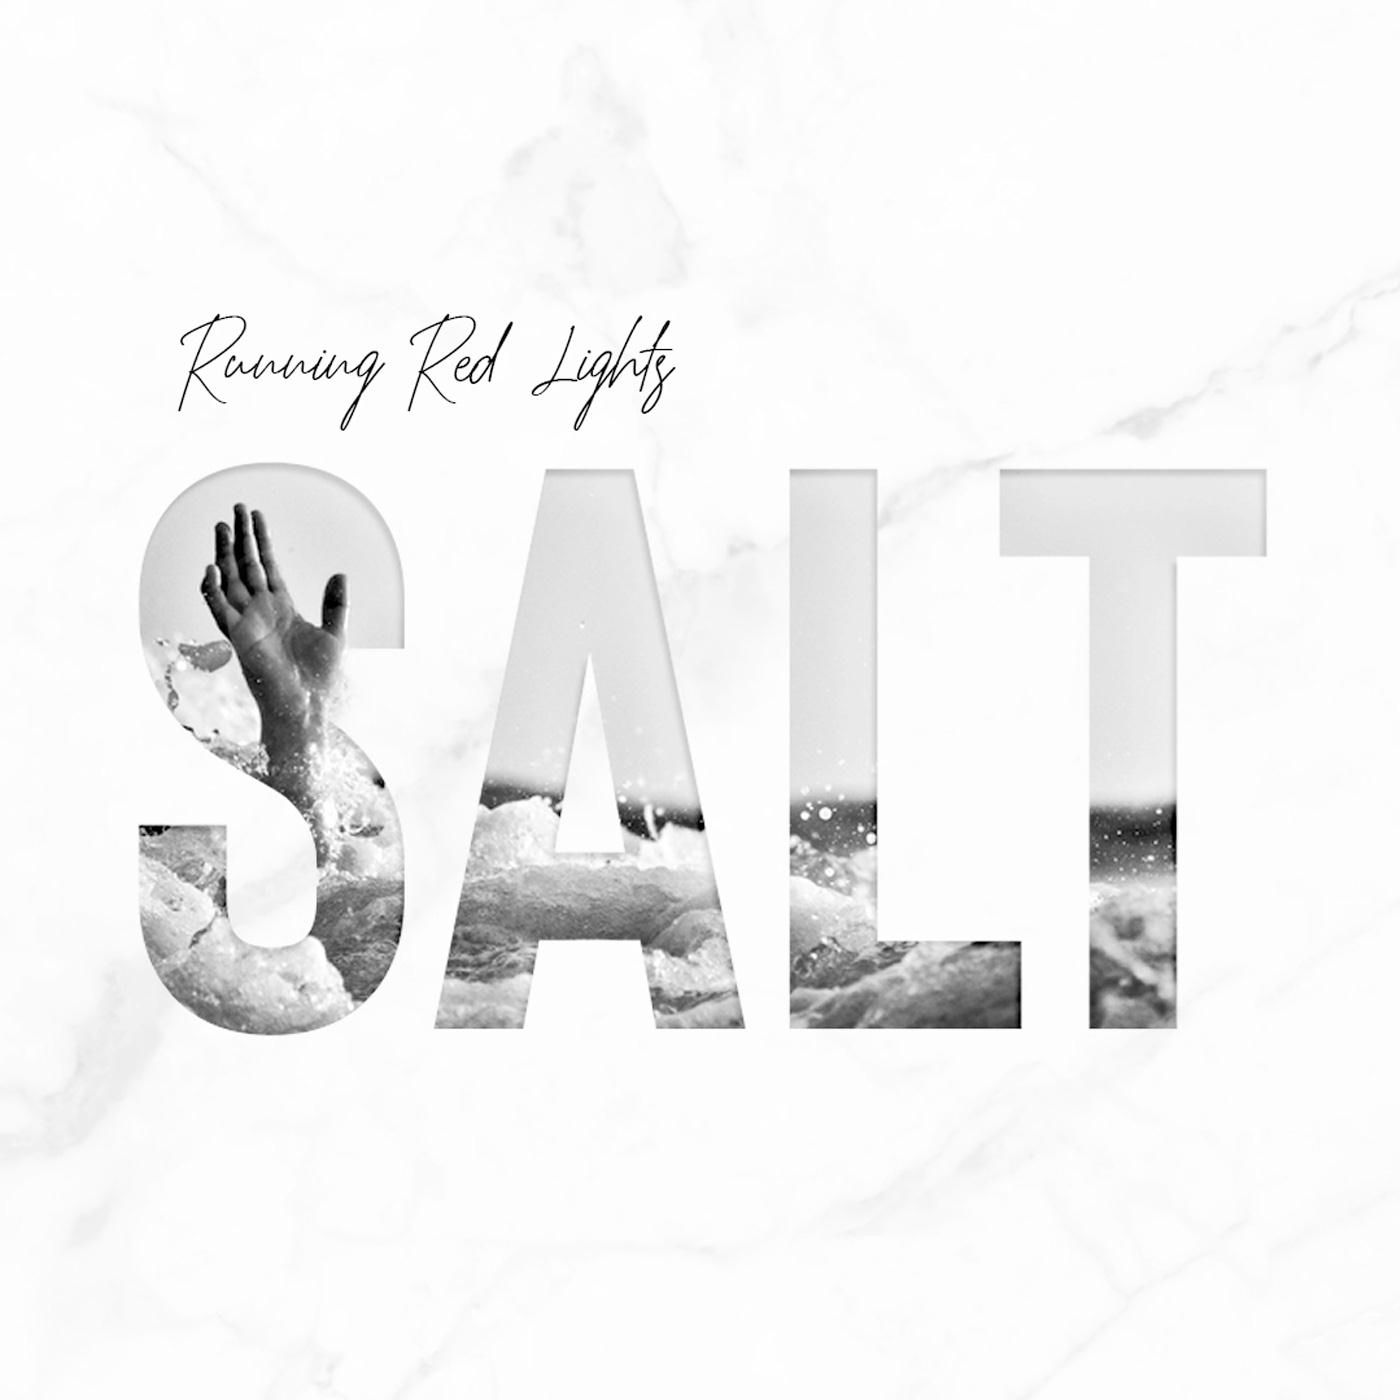 Salt / 2018-Running Red Lights